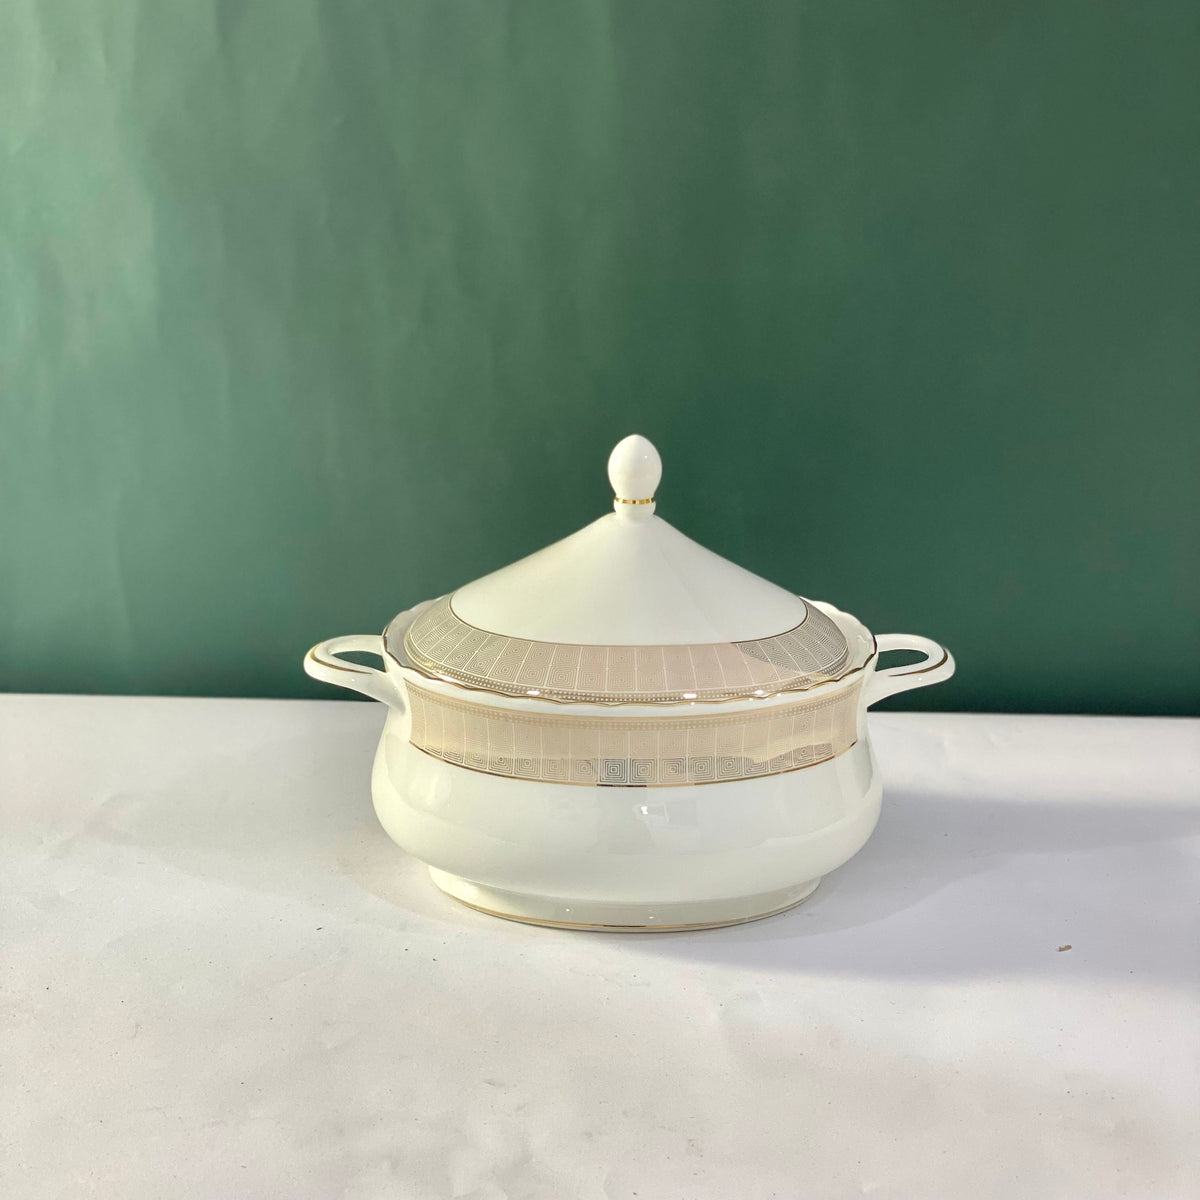 Ceramic Porcelain Serving Bowl with Lid - Design G